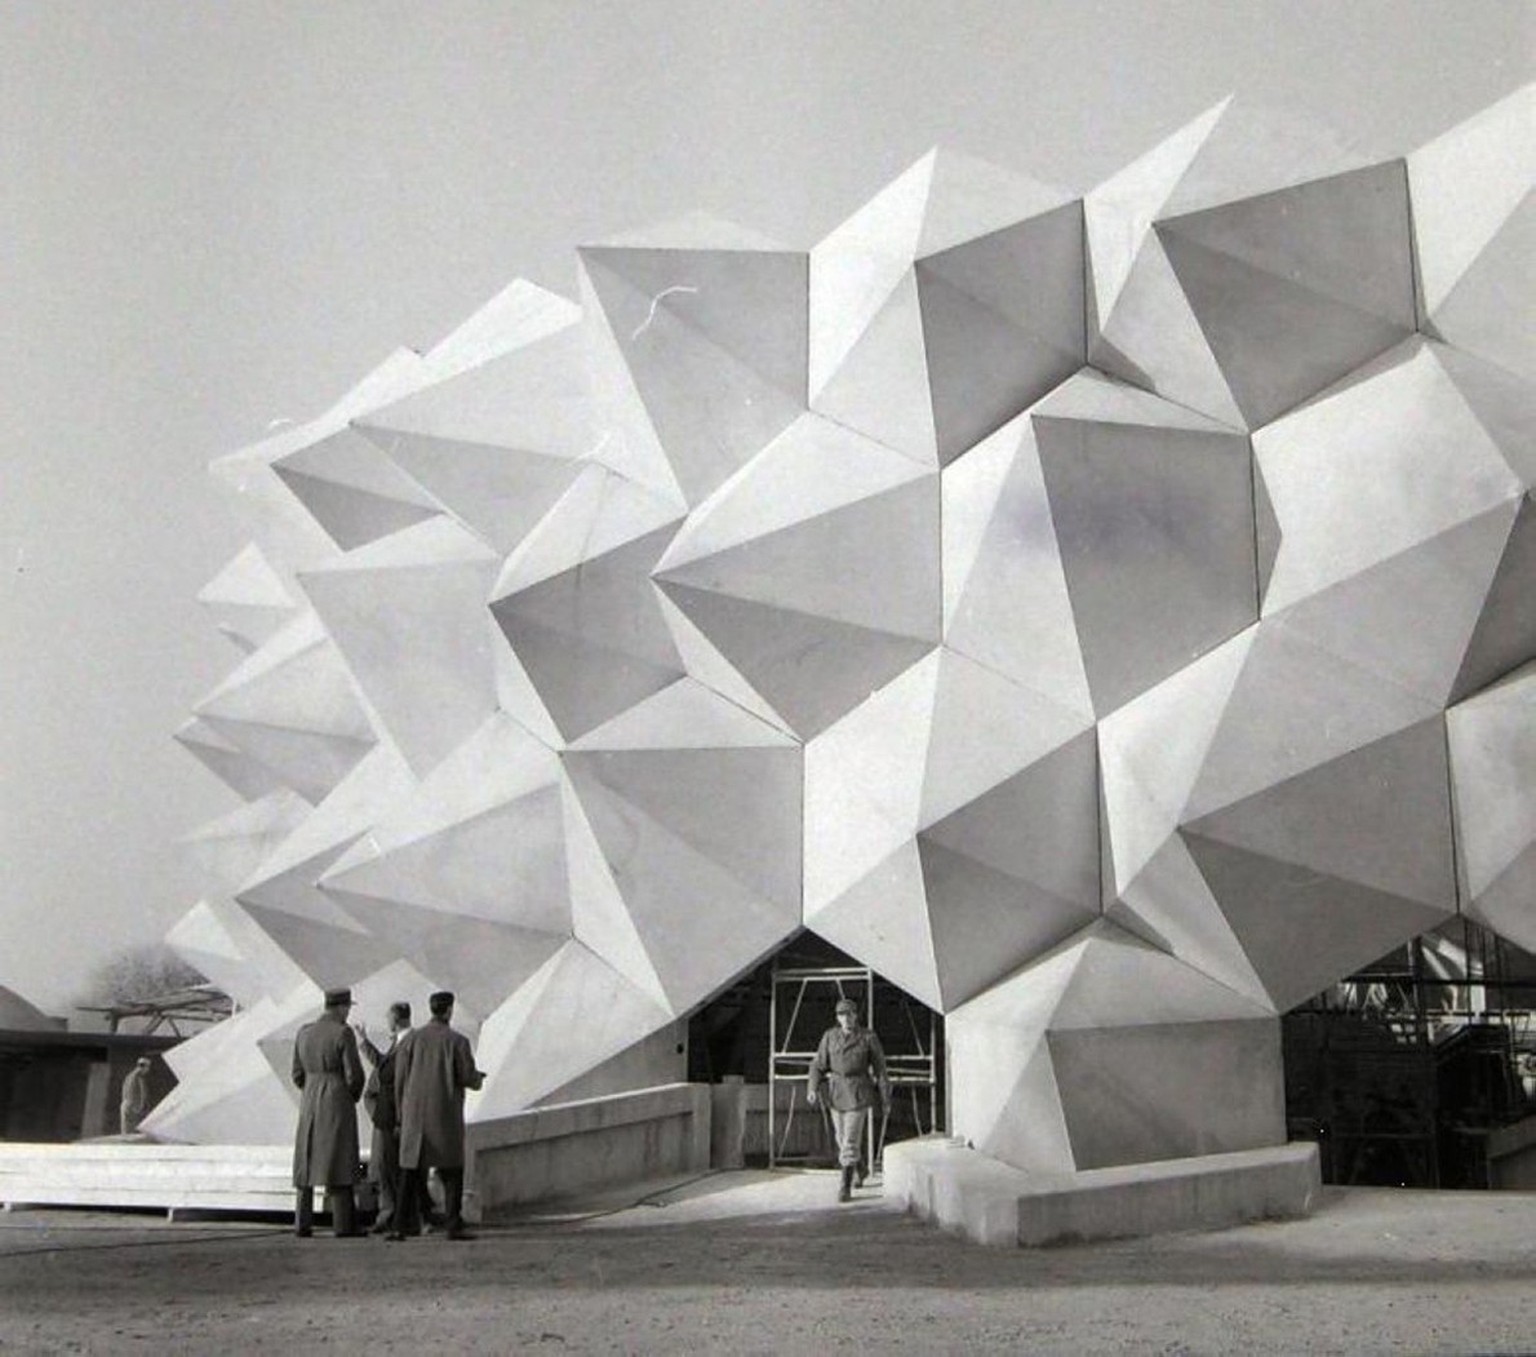 Le pavillon principal de l’Expo 64 de Lausanne, en forme de hérisson: L’exposition nationale était imprégnée de l’atmosphère de la guerre froide et de l’idéologie de la défense nationale.